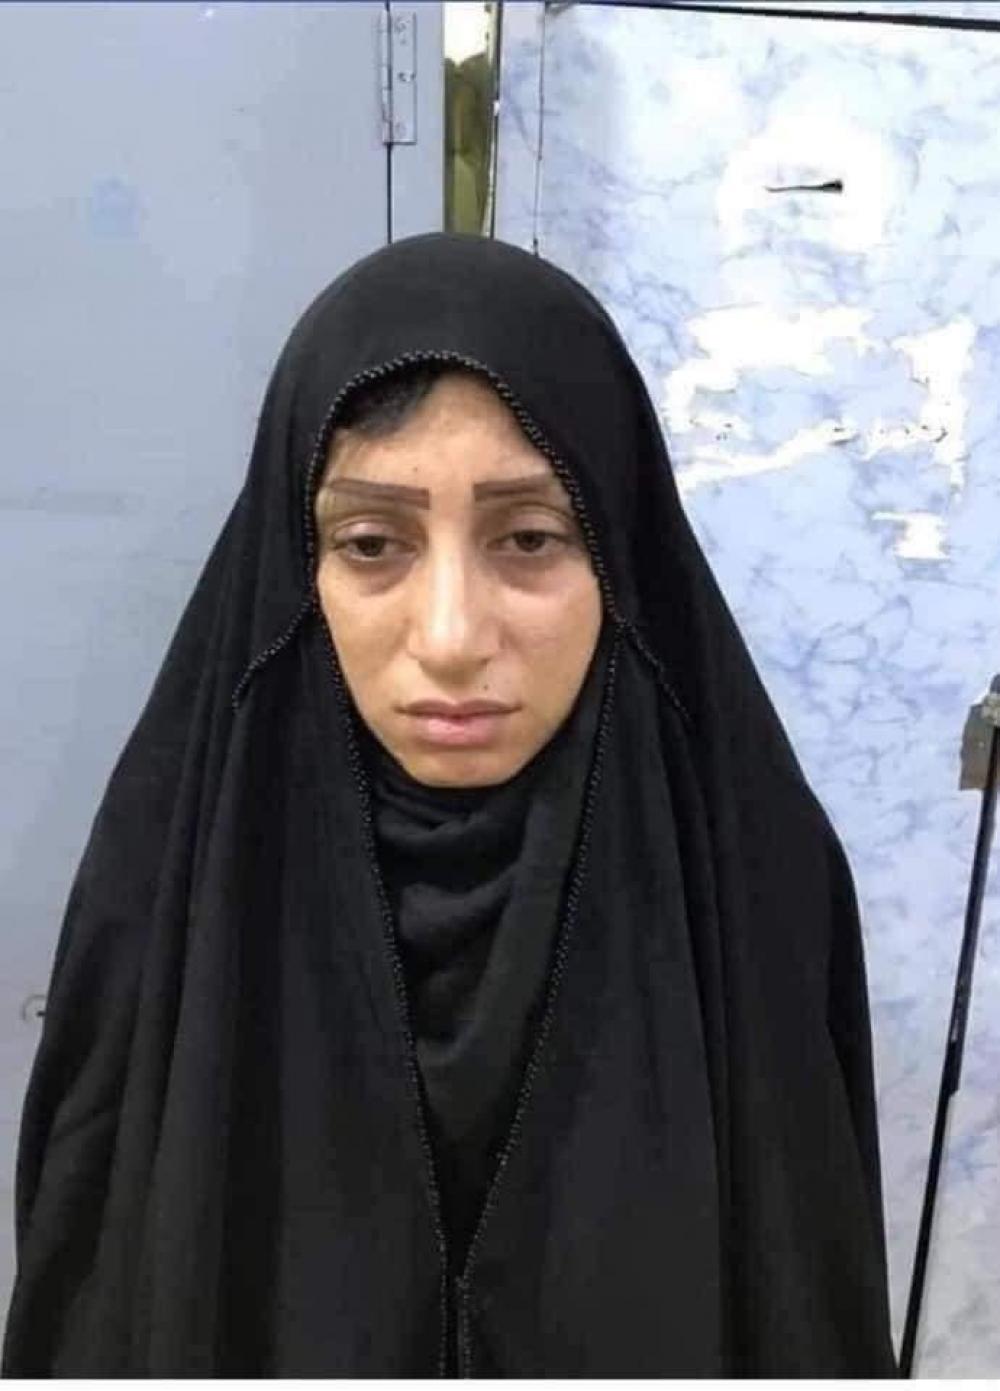 بعد أن رمت طفليها بالنهر.. أم عراقية تواجه حكما بالإعدام أو السجن المؤبد 